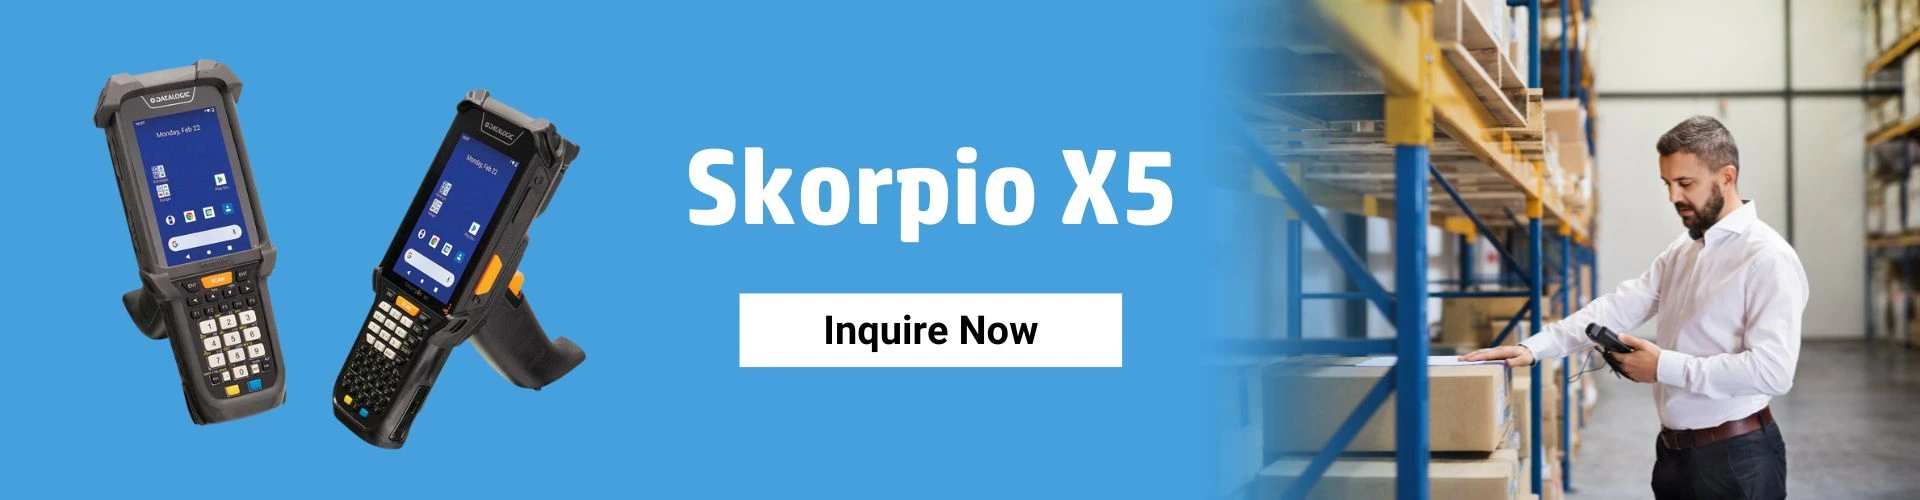 skorpio-x5